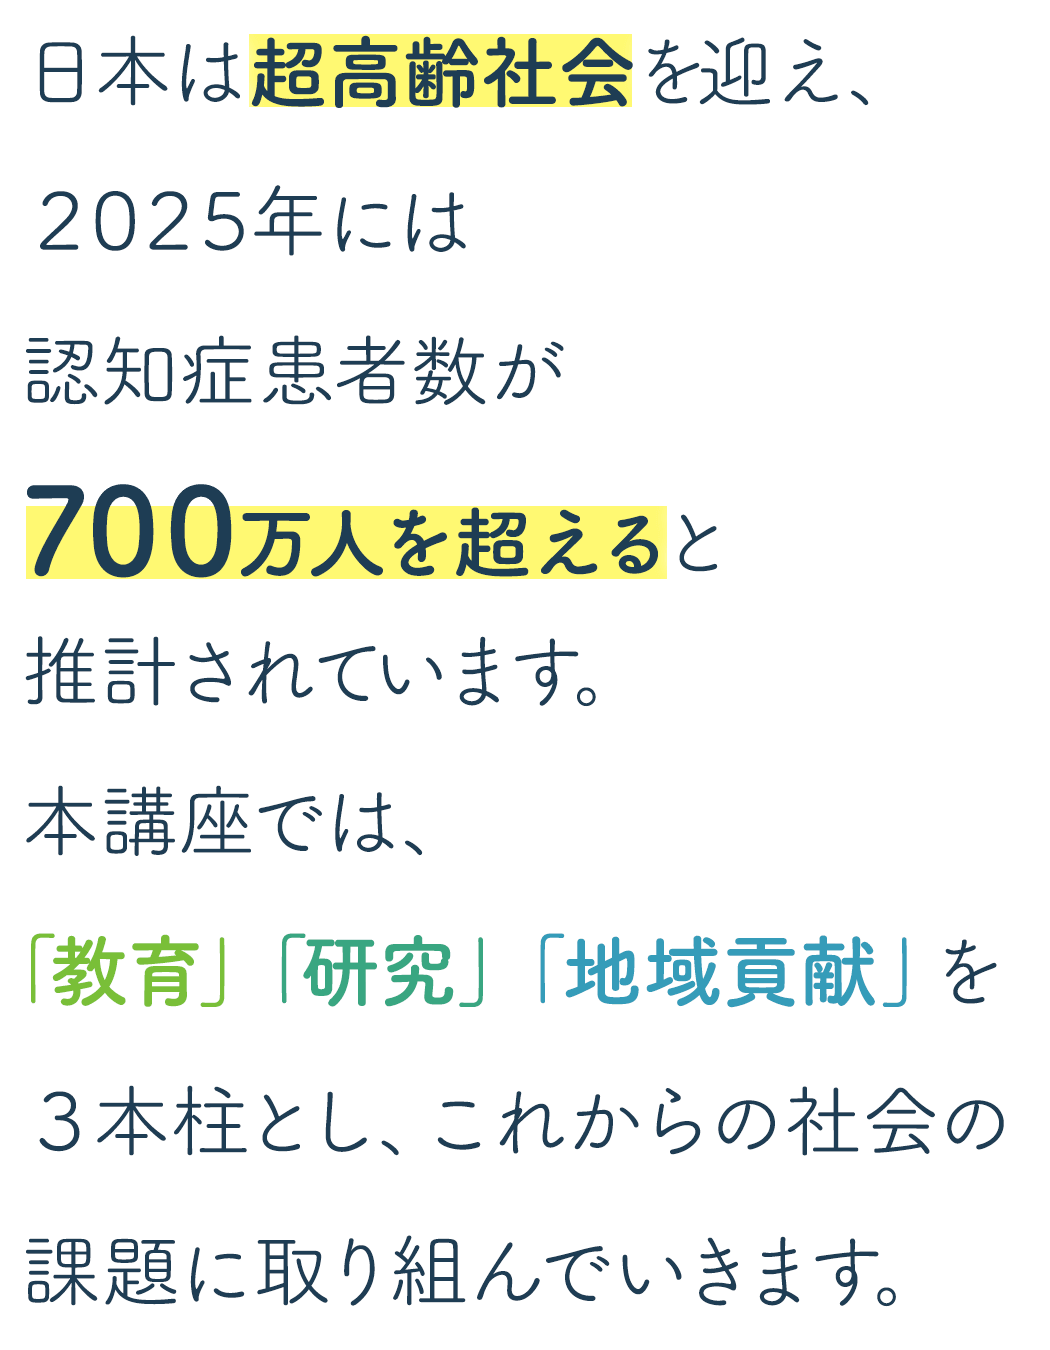 日本は超高齢社会を迎え、2025年には認知症患者数が700万人を超えると推計されています。本講座では、この課題に教育、研究、地域貢献を3本柱に、取り組んでいきます。